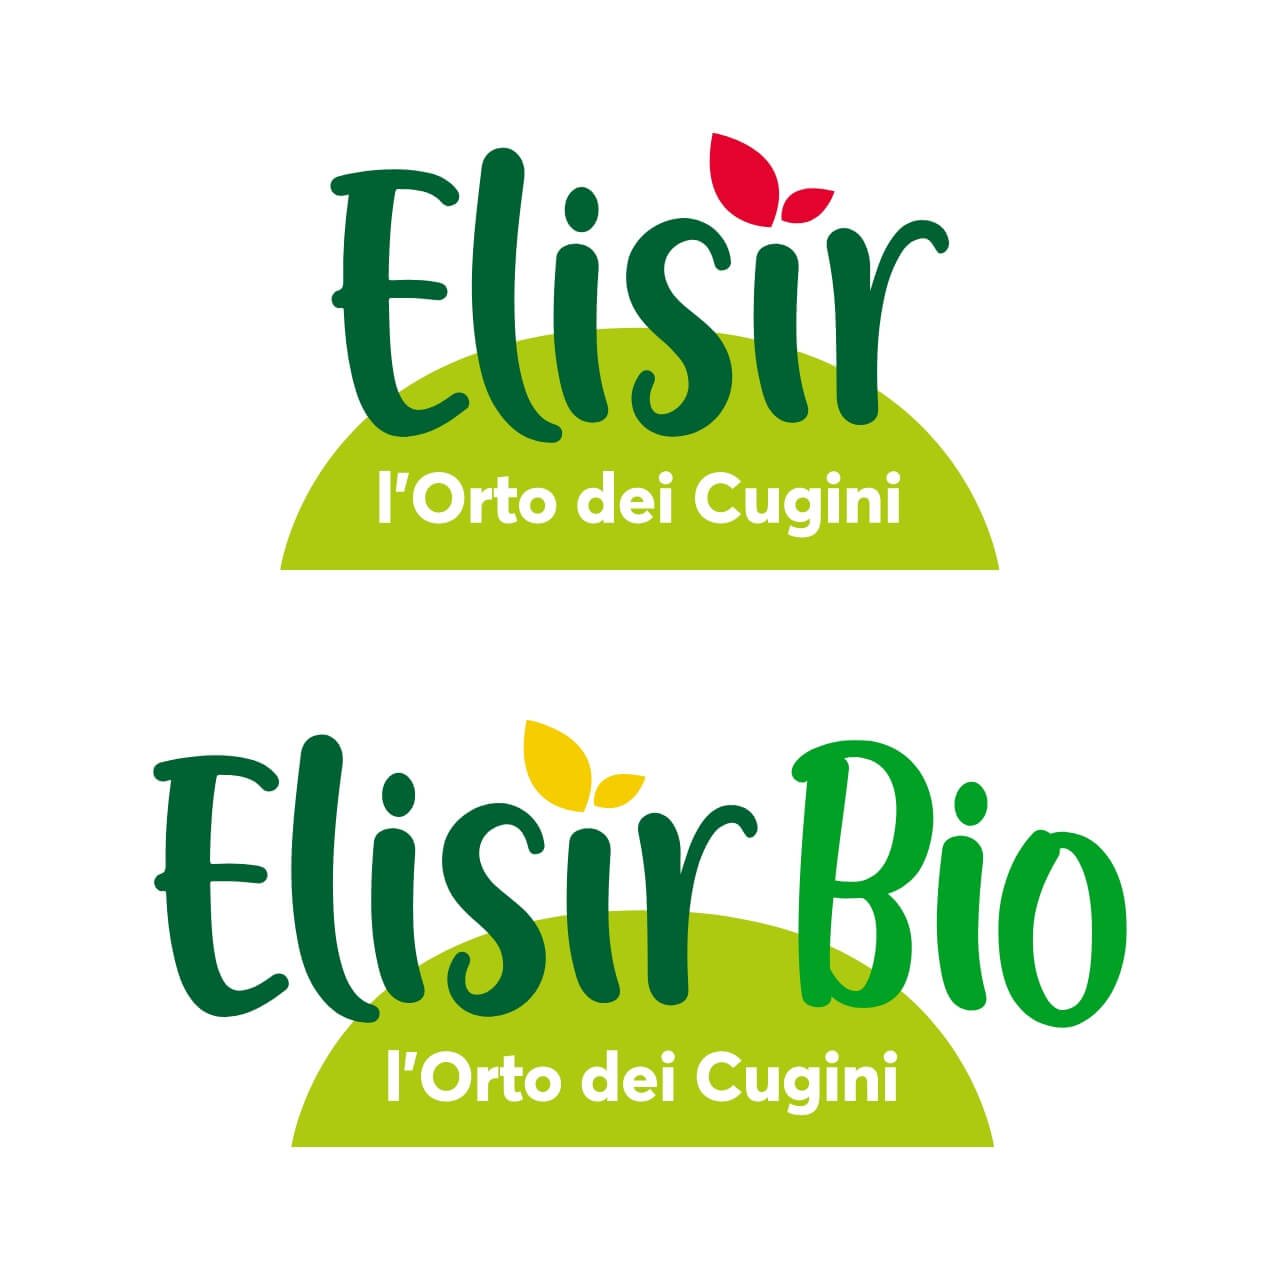 Per Cedior lavoriamo per far crescere il brand Elisir - Nuovo logo, nuovo payoff